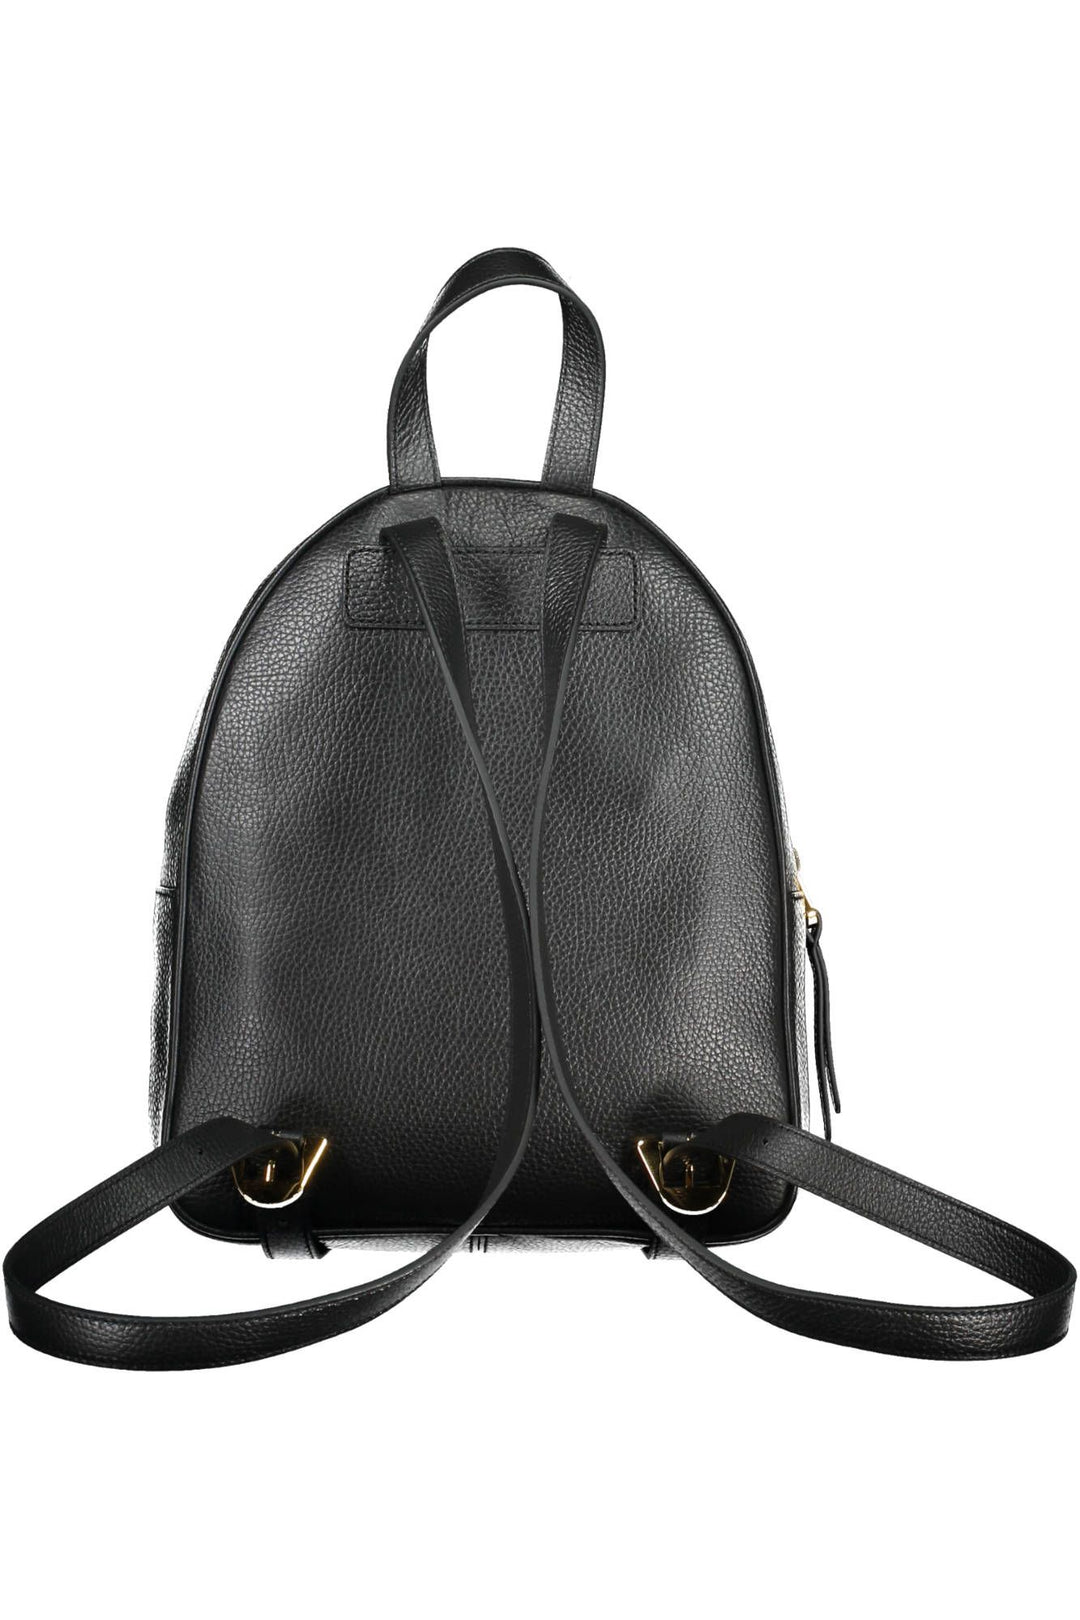 Coccinelle Elegant Black Leather Backpack